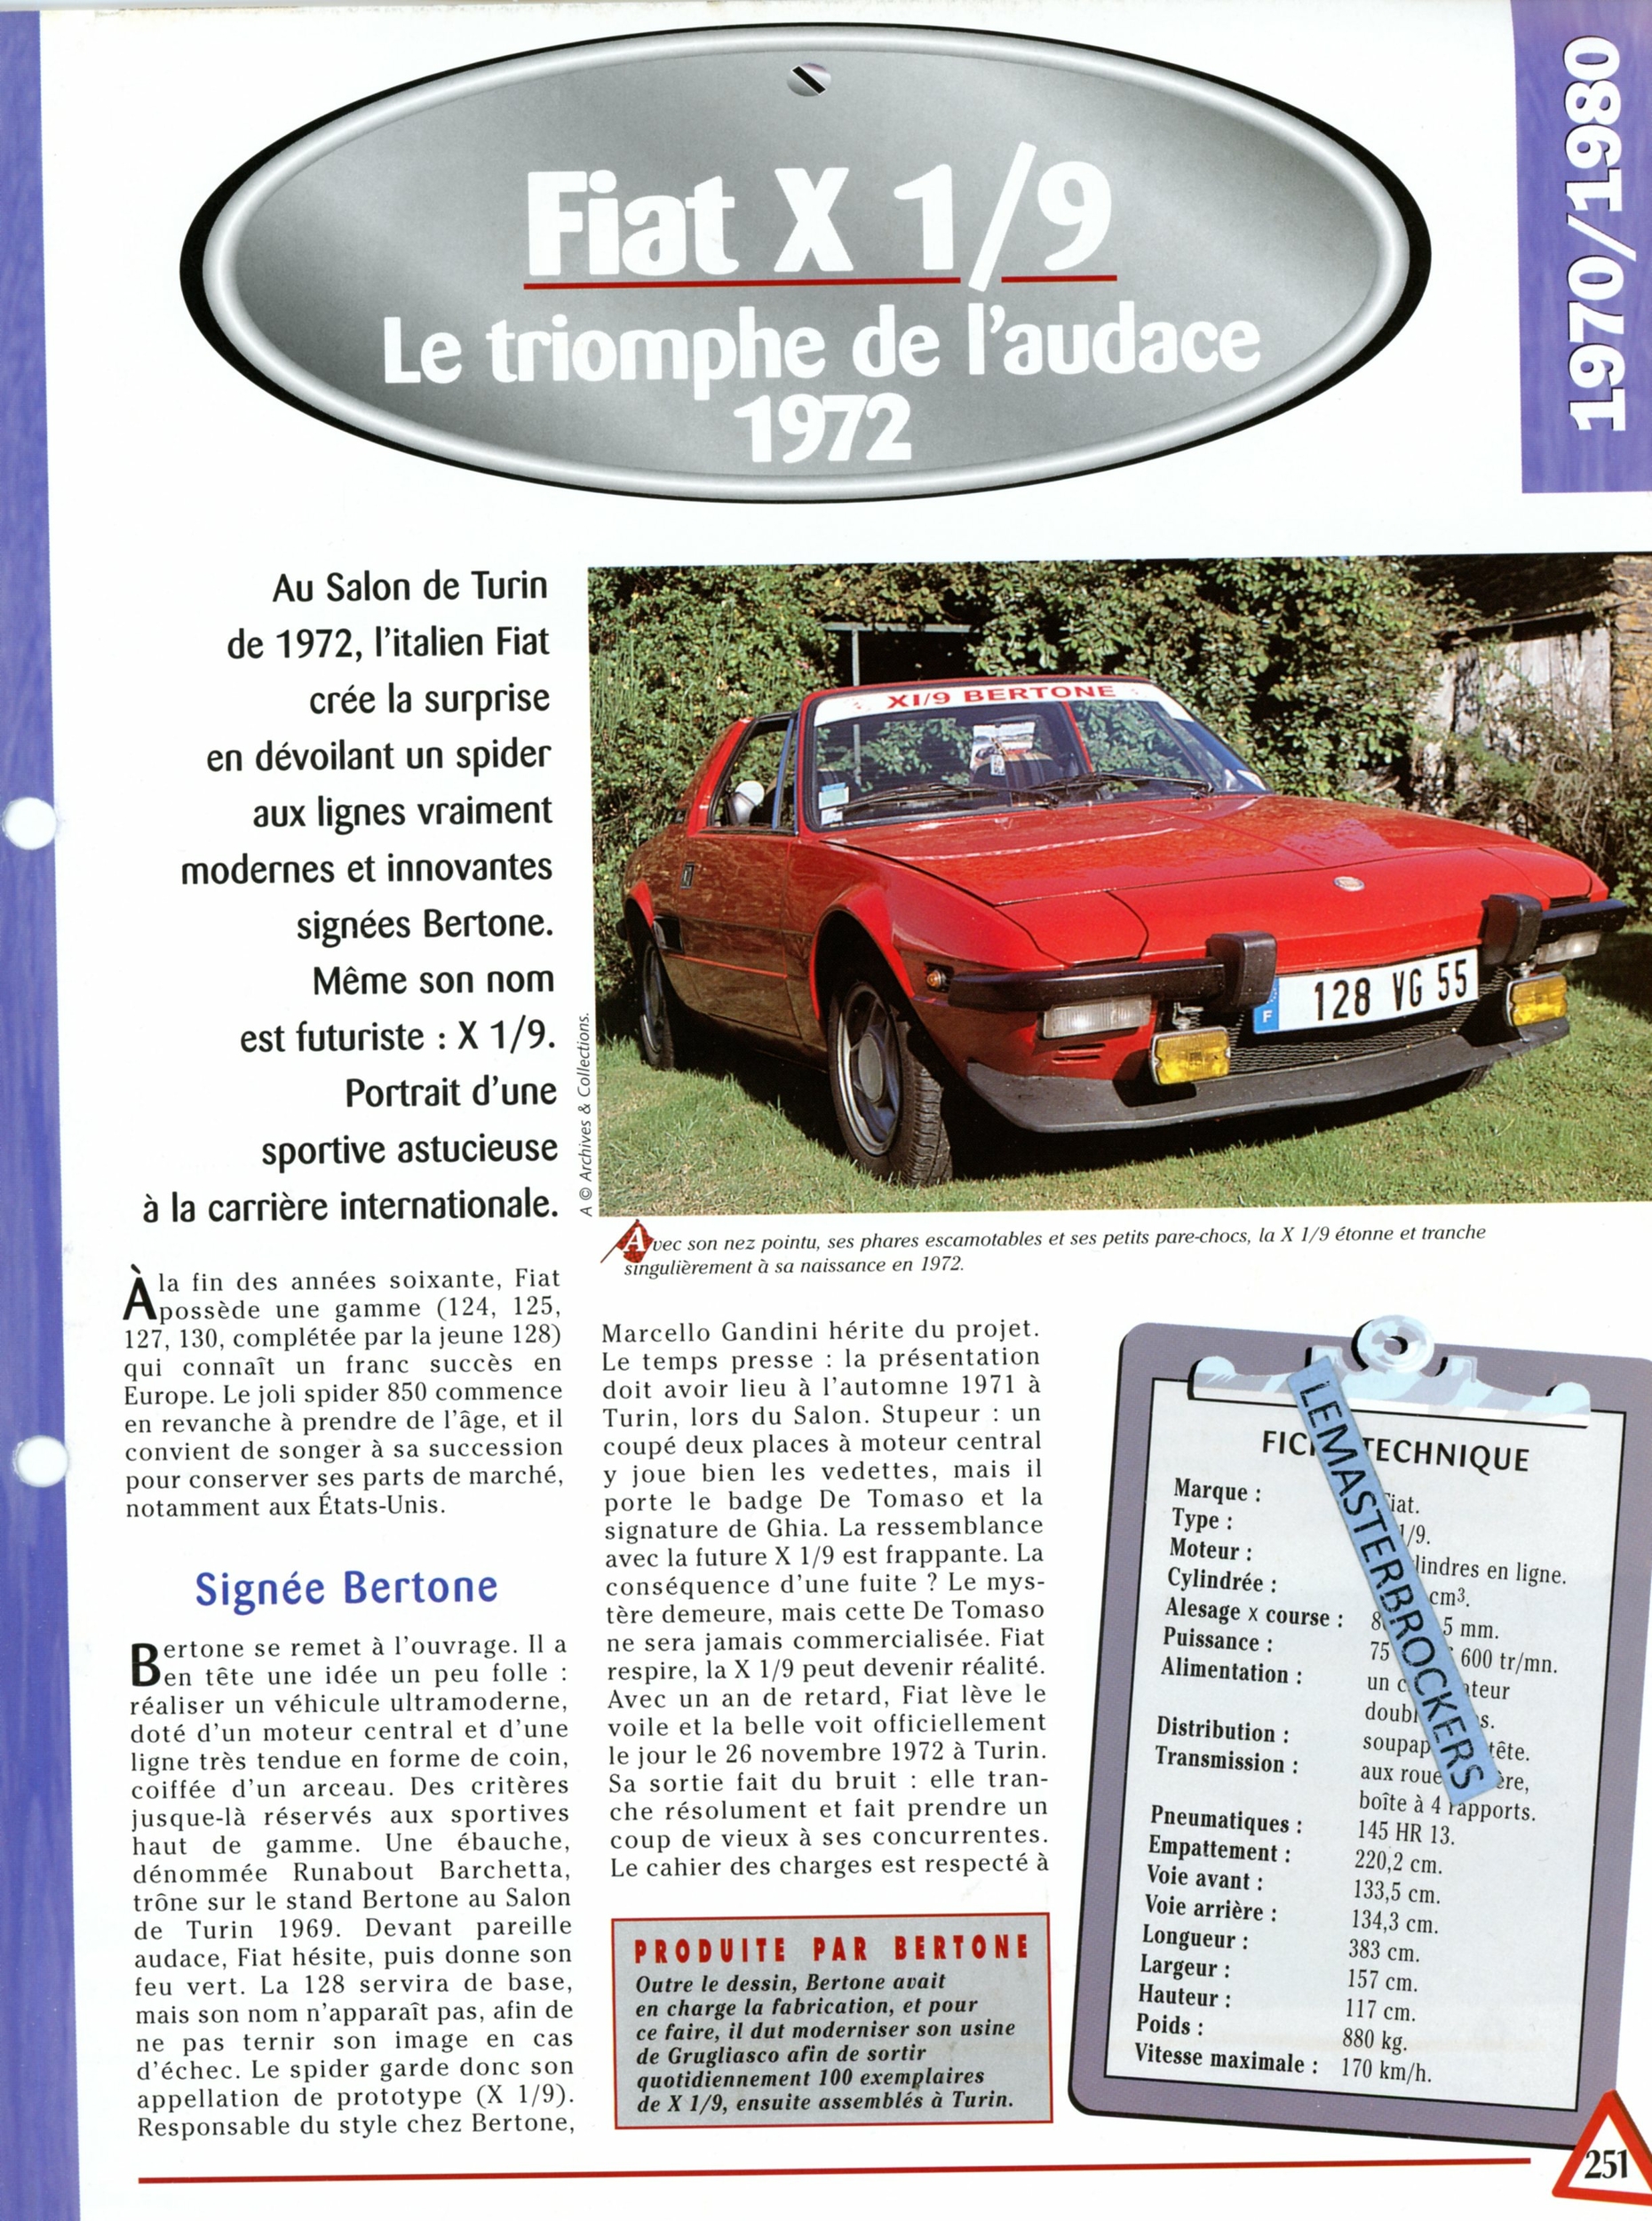 FIAT X 1/9 COUPÉ 1972 - FICHE AUTO COLLECTION HACHETTE - FICHE TECHNIQUE